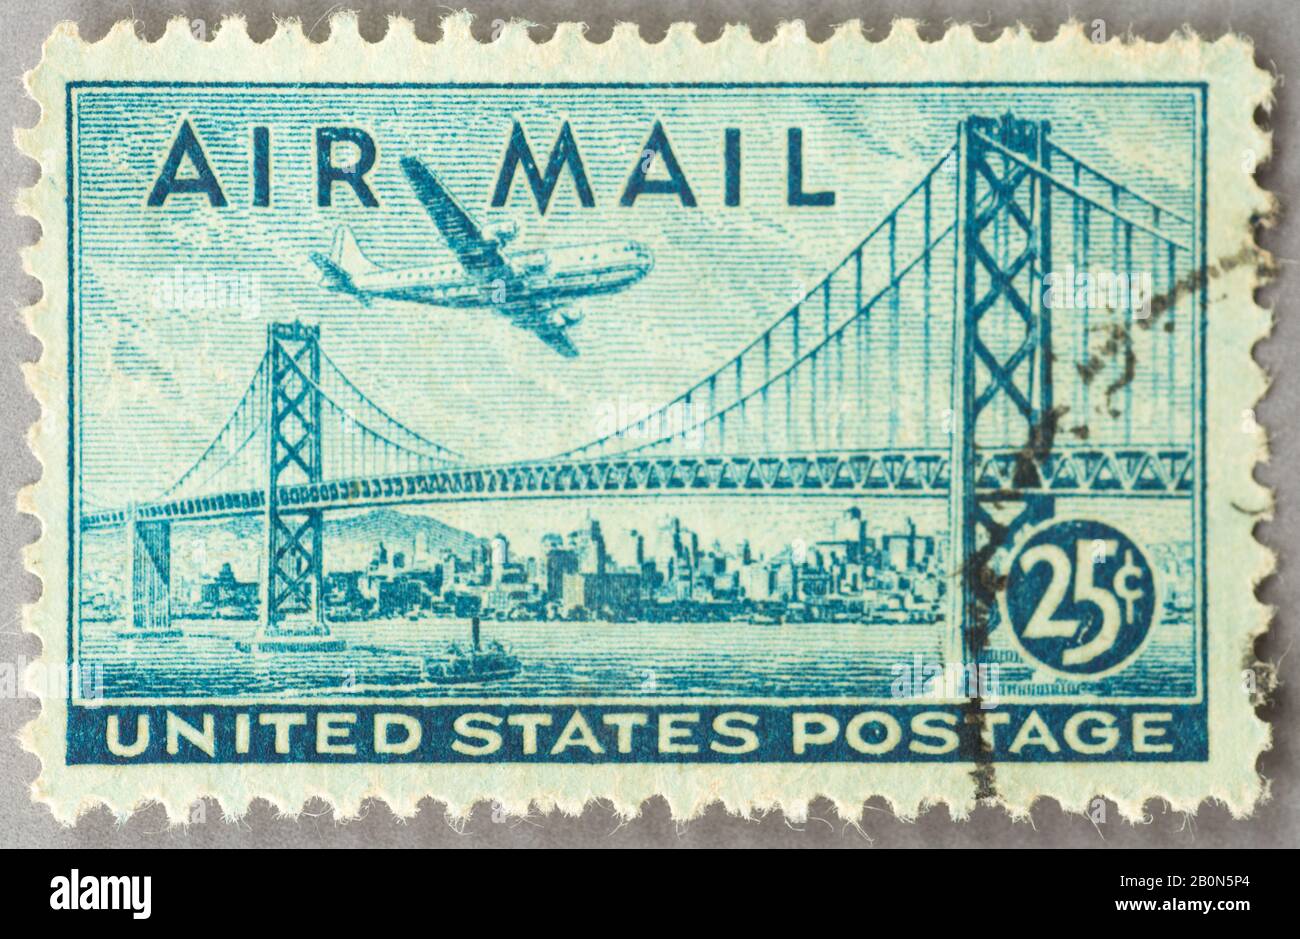 Timbre aérien américain de 1947 présentant le pont suspendu de San Francisco-Oakland Bay. Banque D'Images